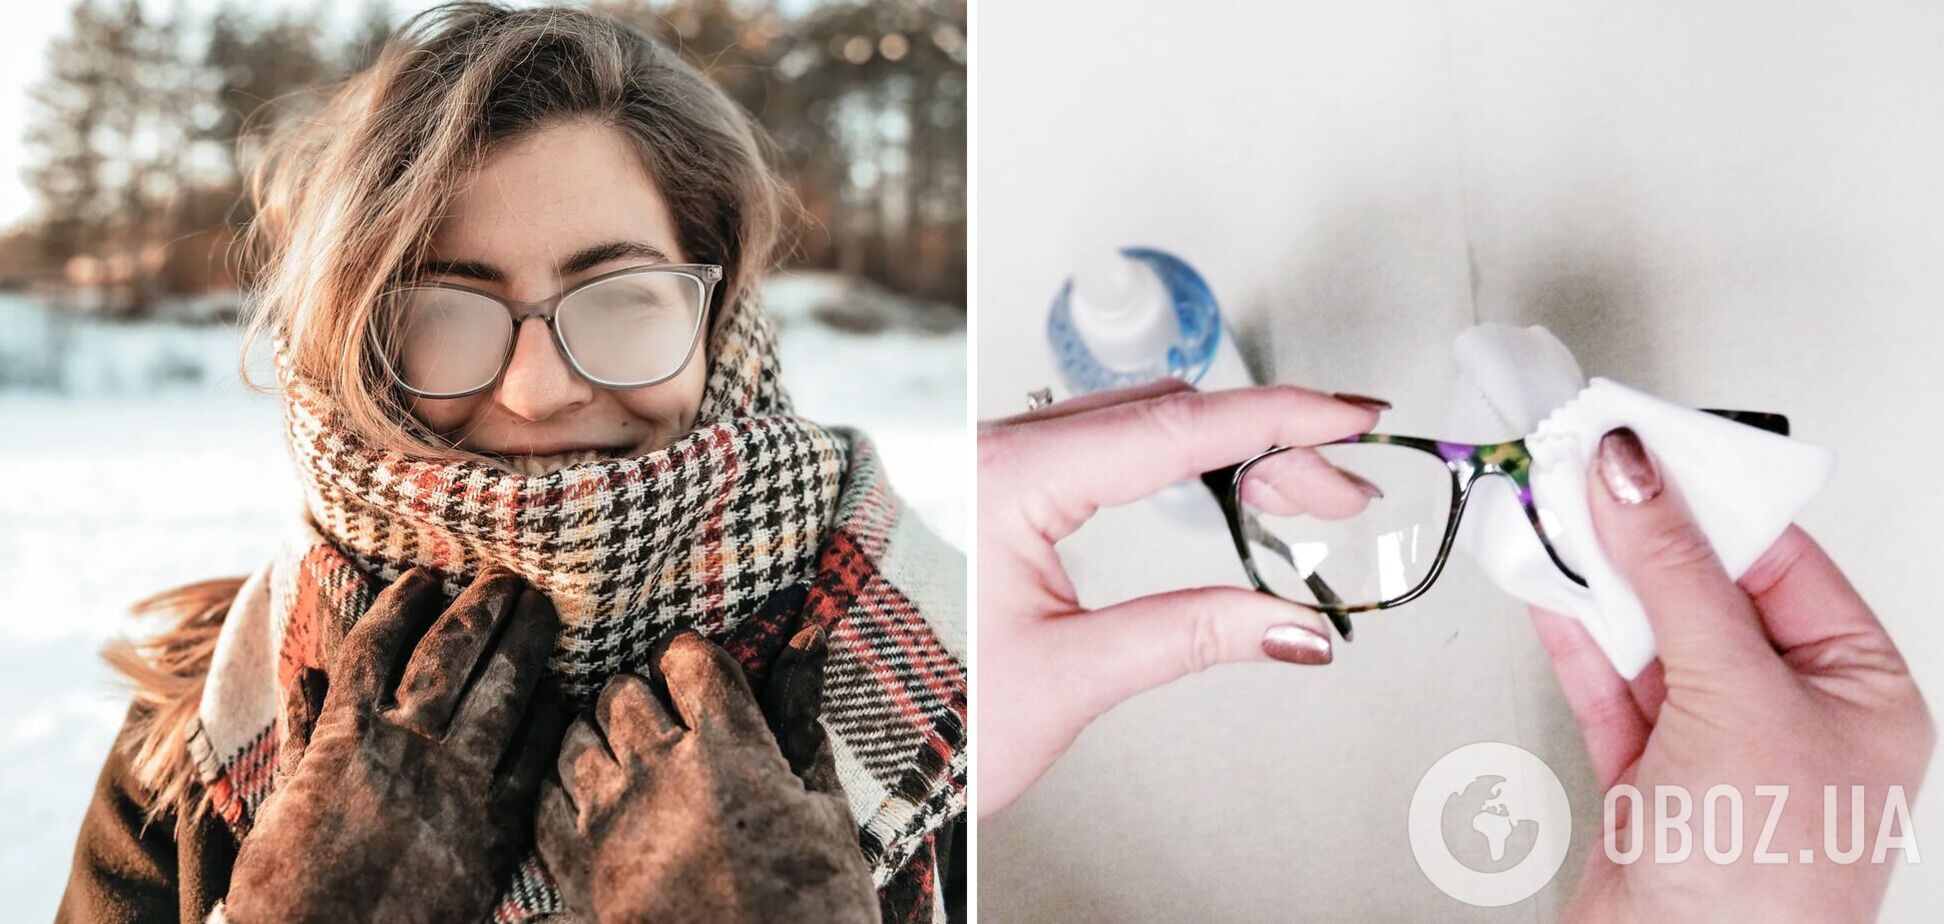 Як зробити, щоб окуляри не запотівали, коли після морозу заходиш у тепло, та чому це відбувається